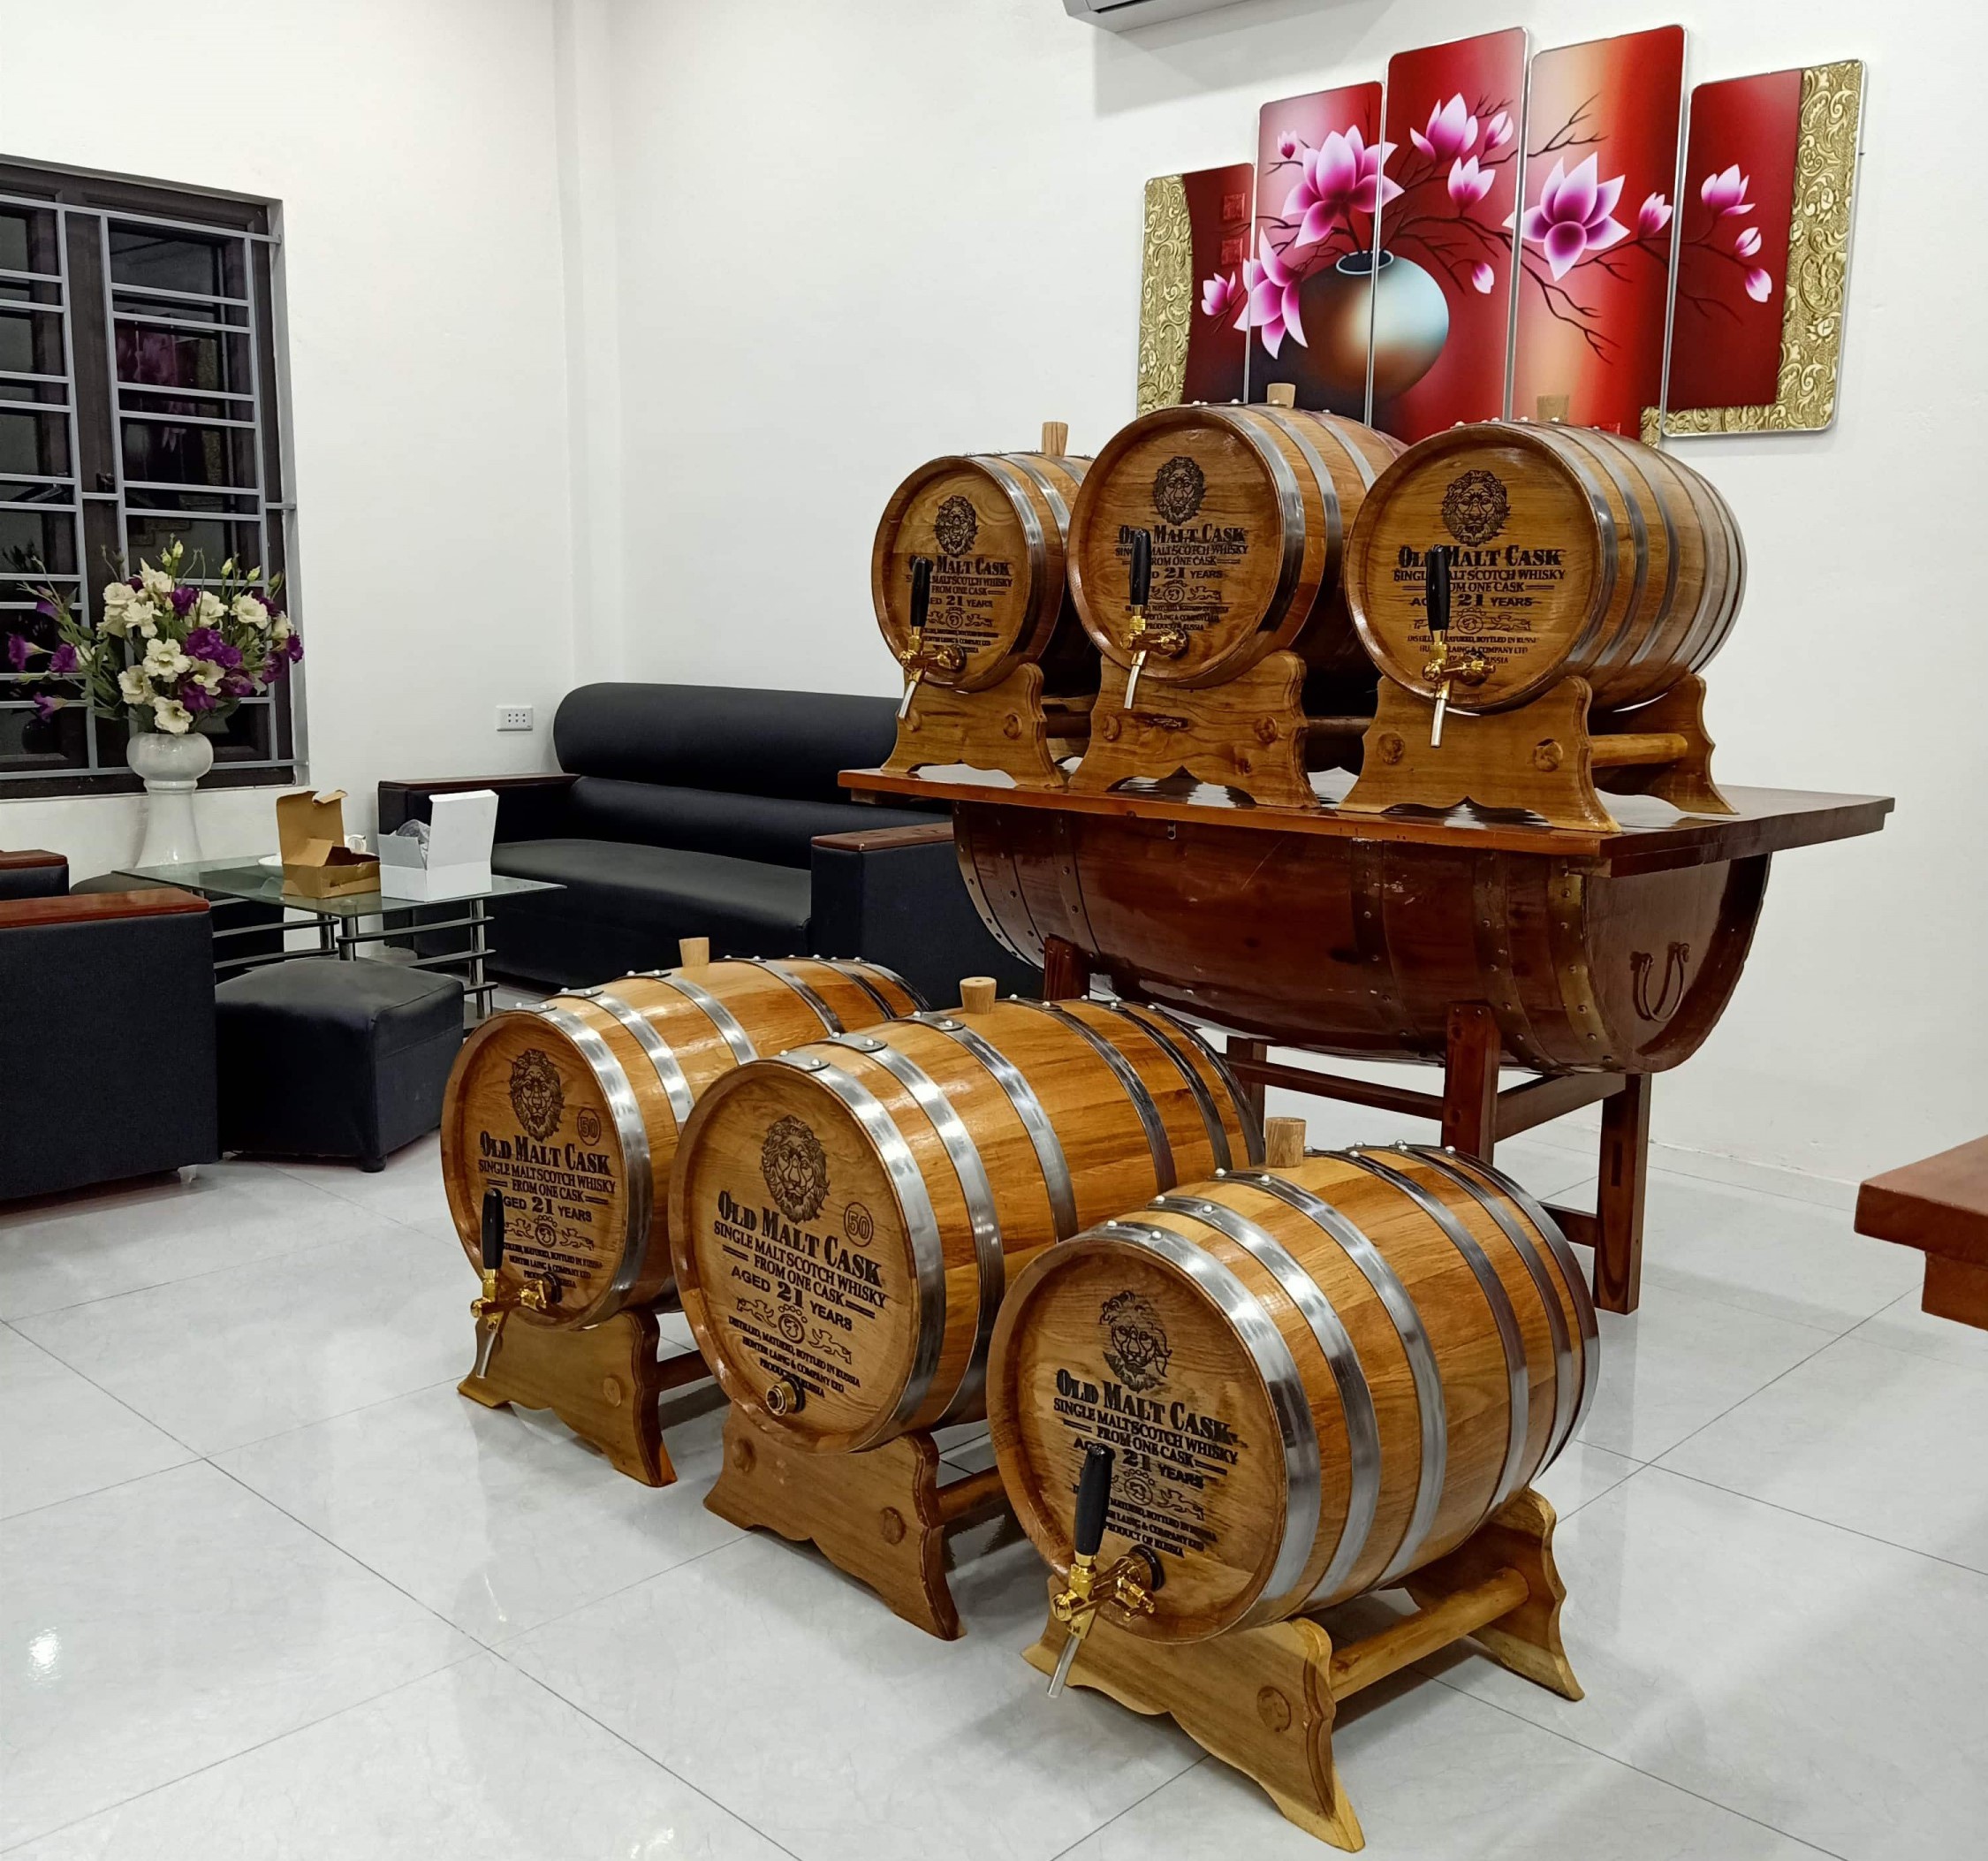 Mua thùng rượu gỗ sồi Hà Nội ở đâu tốt là nhu cầu của rất nhiều khách hàng